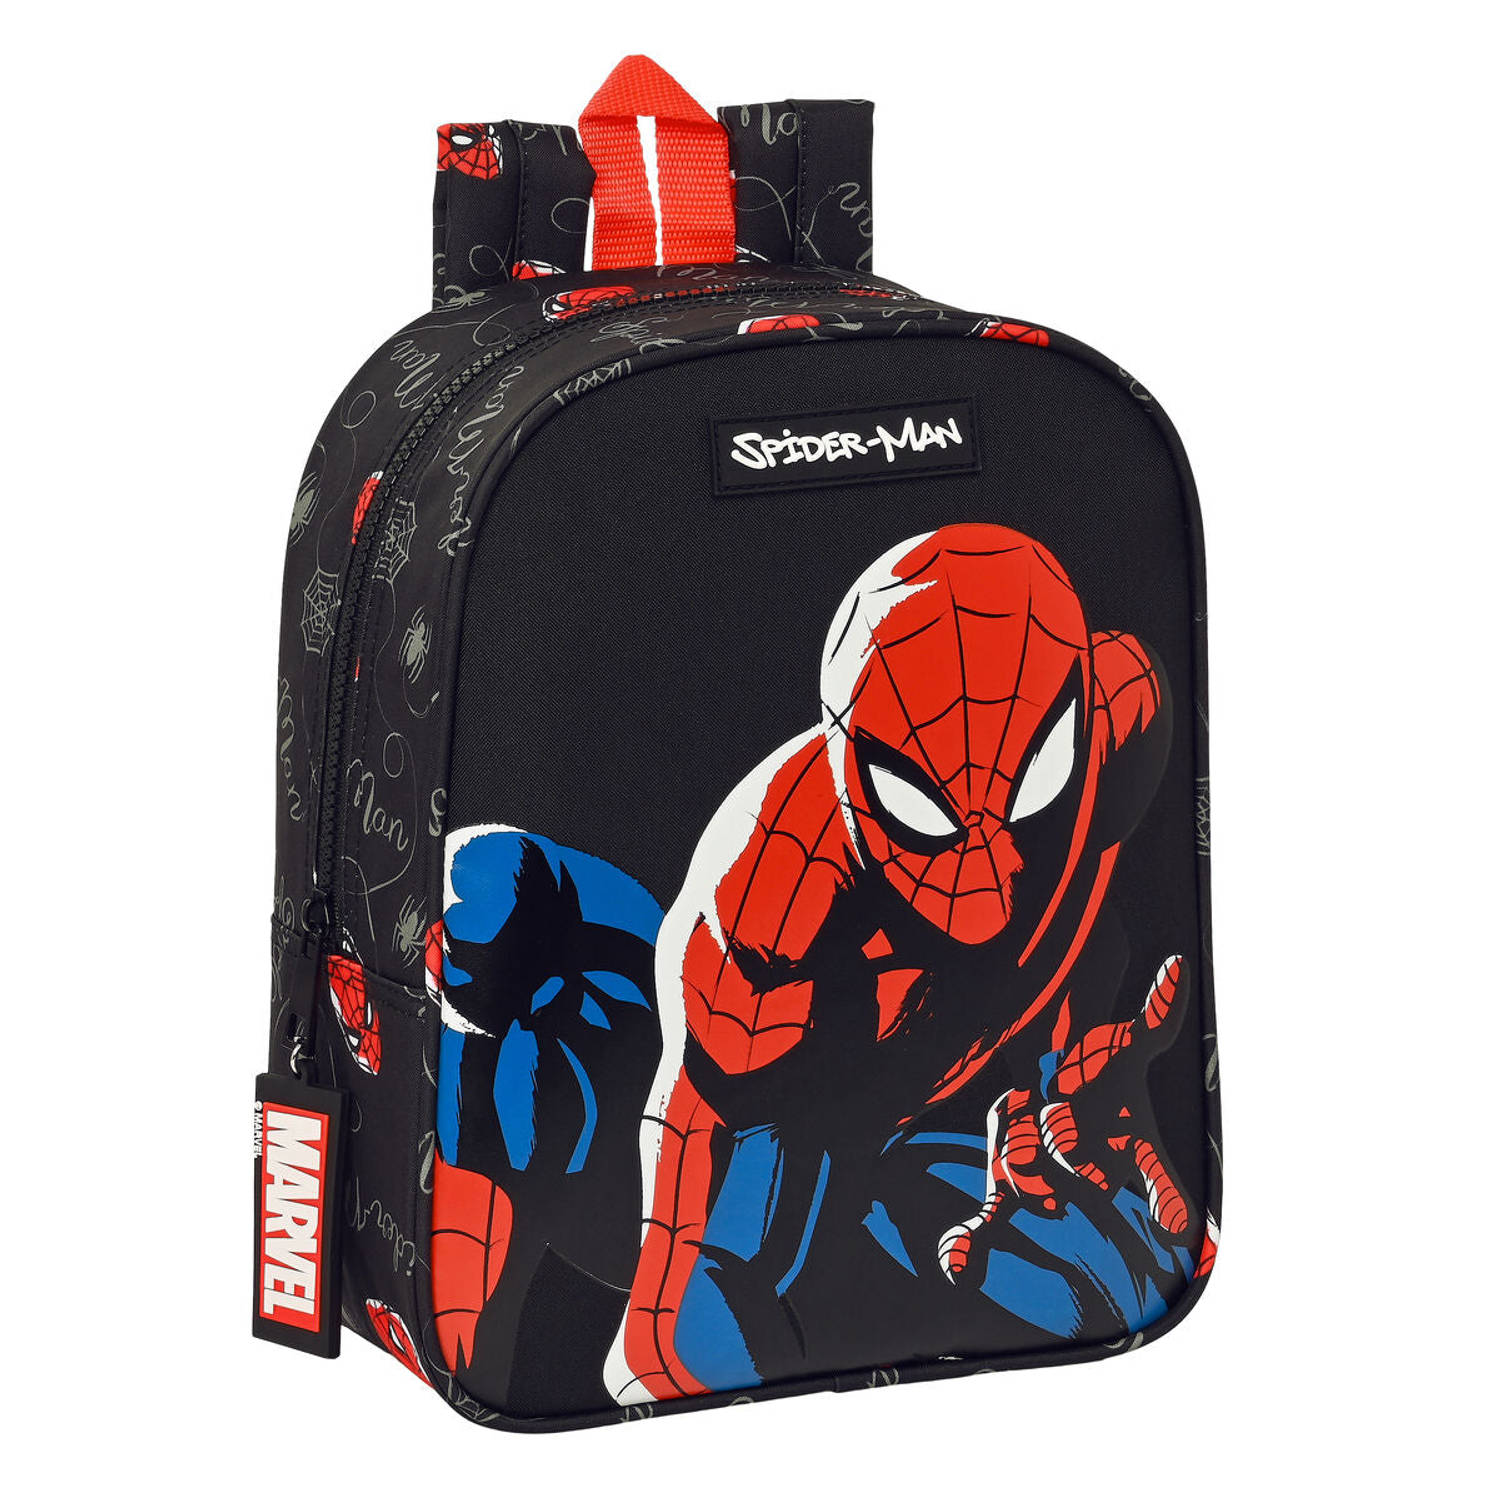 Spider-Man, Hero - Peuterrugzak - 27 x 22 x 10 cm - Polyester